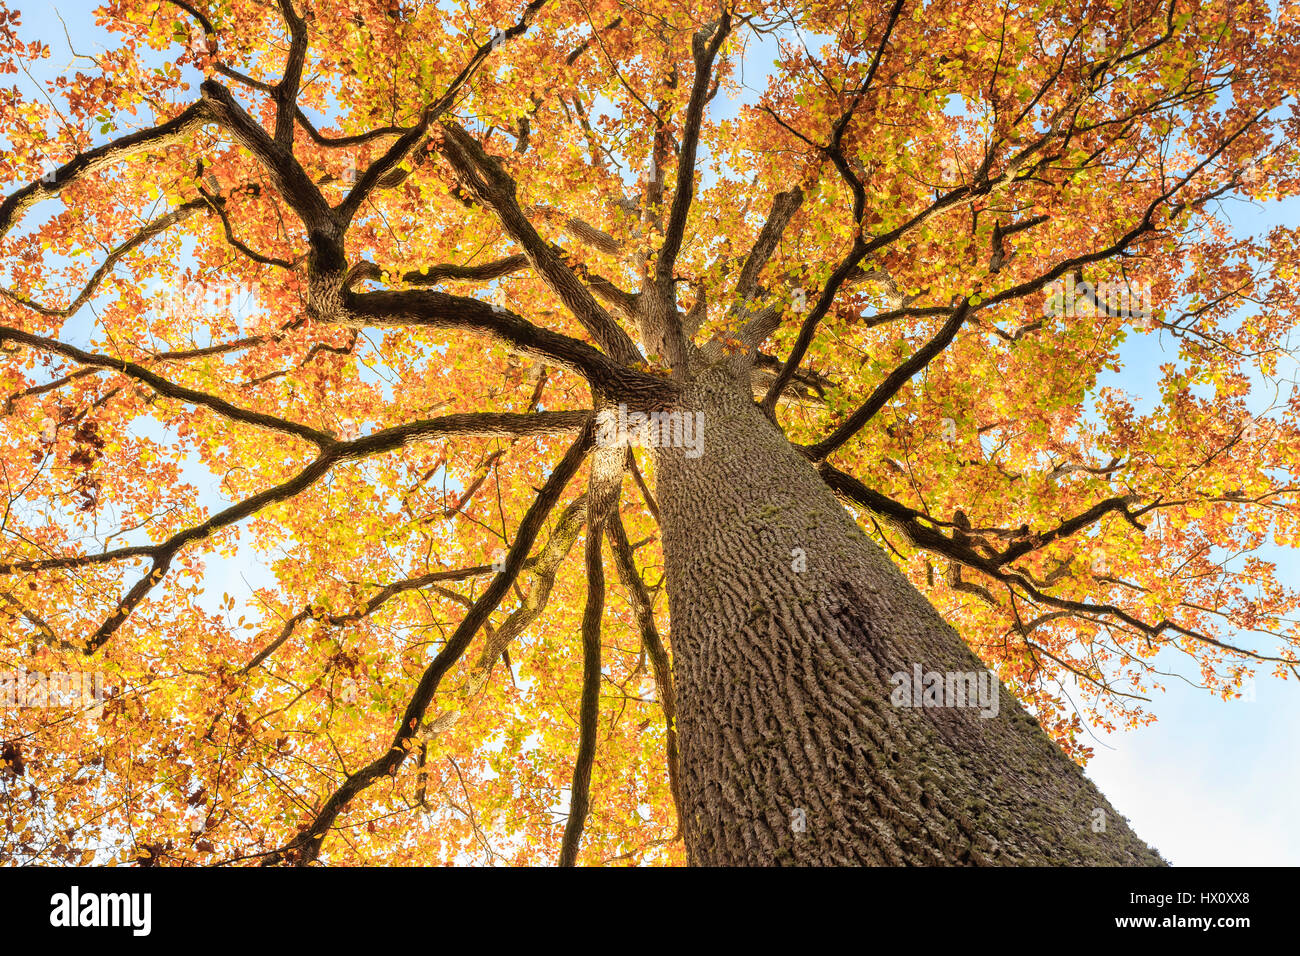 In Francia, in barrique di rovere di Allier, Tronçais foresta, Saint-Bonnet-Troncais, notevole quercia sessile Stebbing in autunno (Quercus petraea), la più bella della foresta Foto Stock